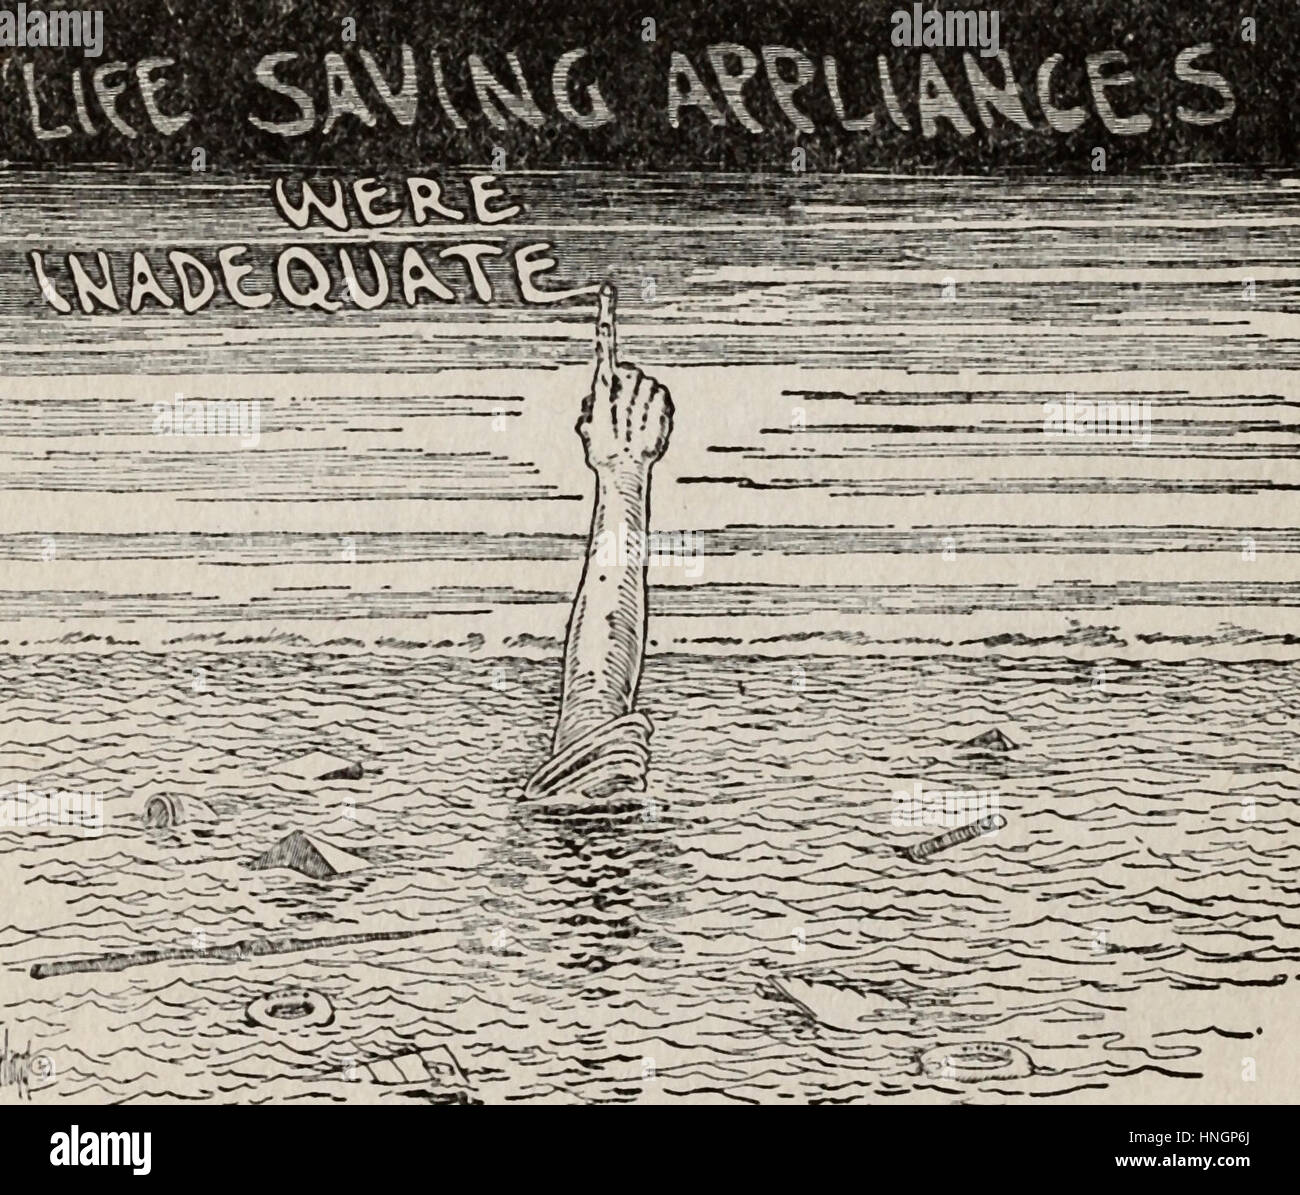 Mezzi di salvataggio erano inadeguati - cartoon politico dopo il disastro del Titanic Foto Stock